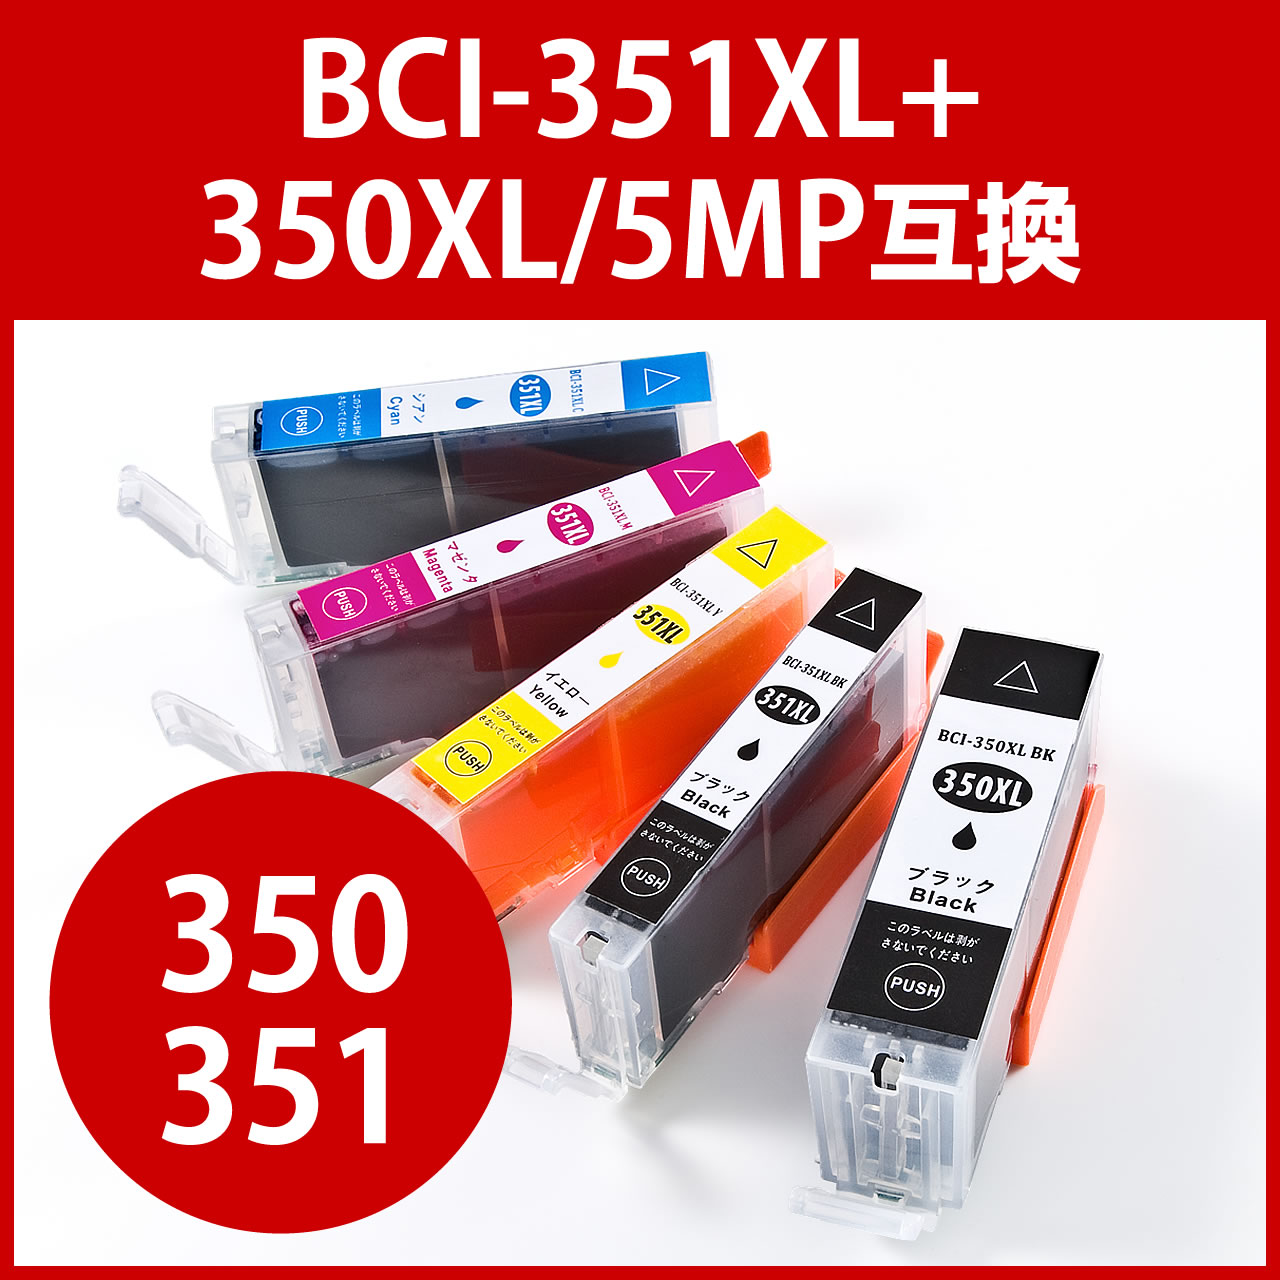 互換インク キャノン BCI-351XL+350XL/5MP対応（大容量・5色パック